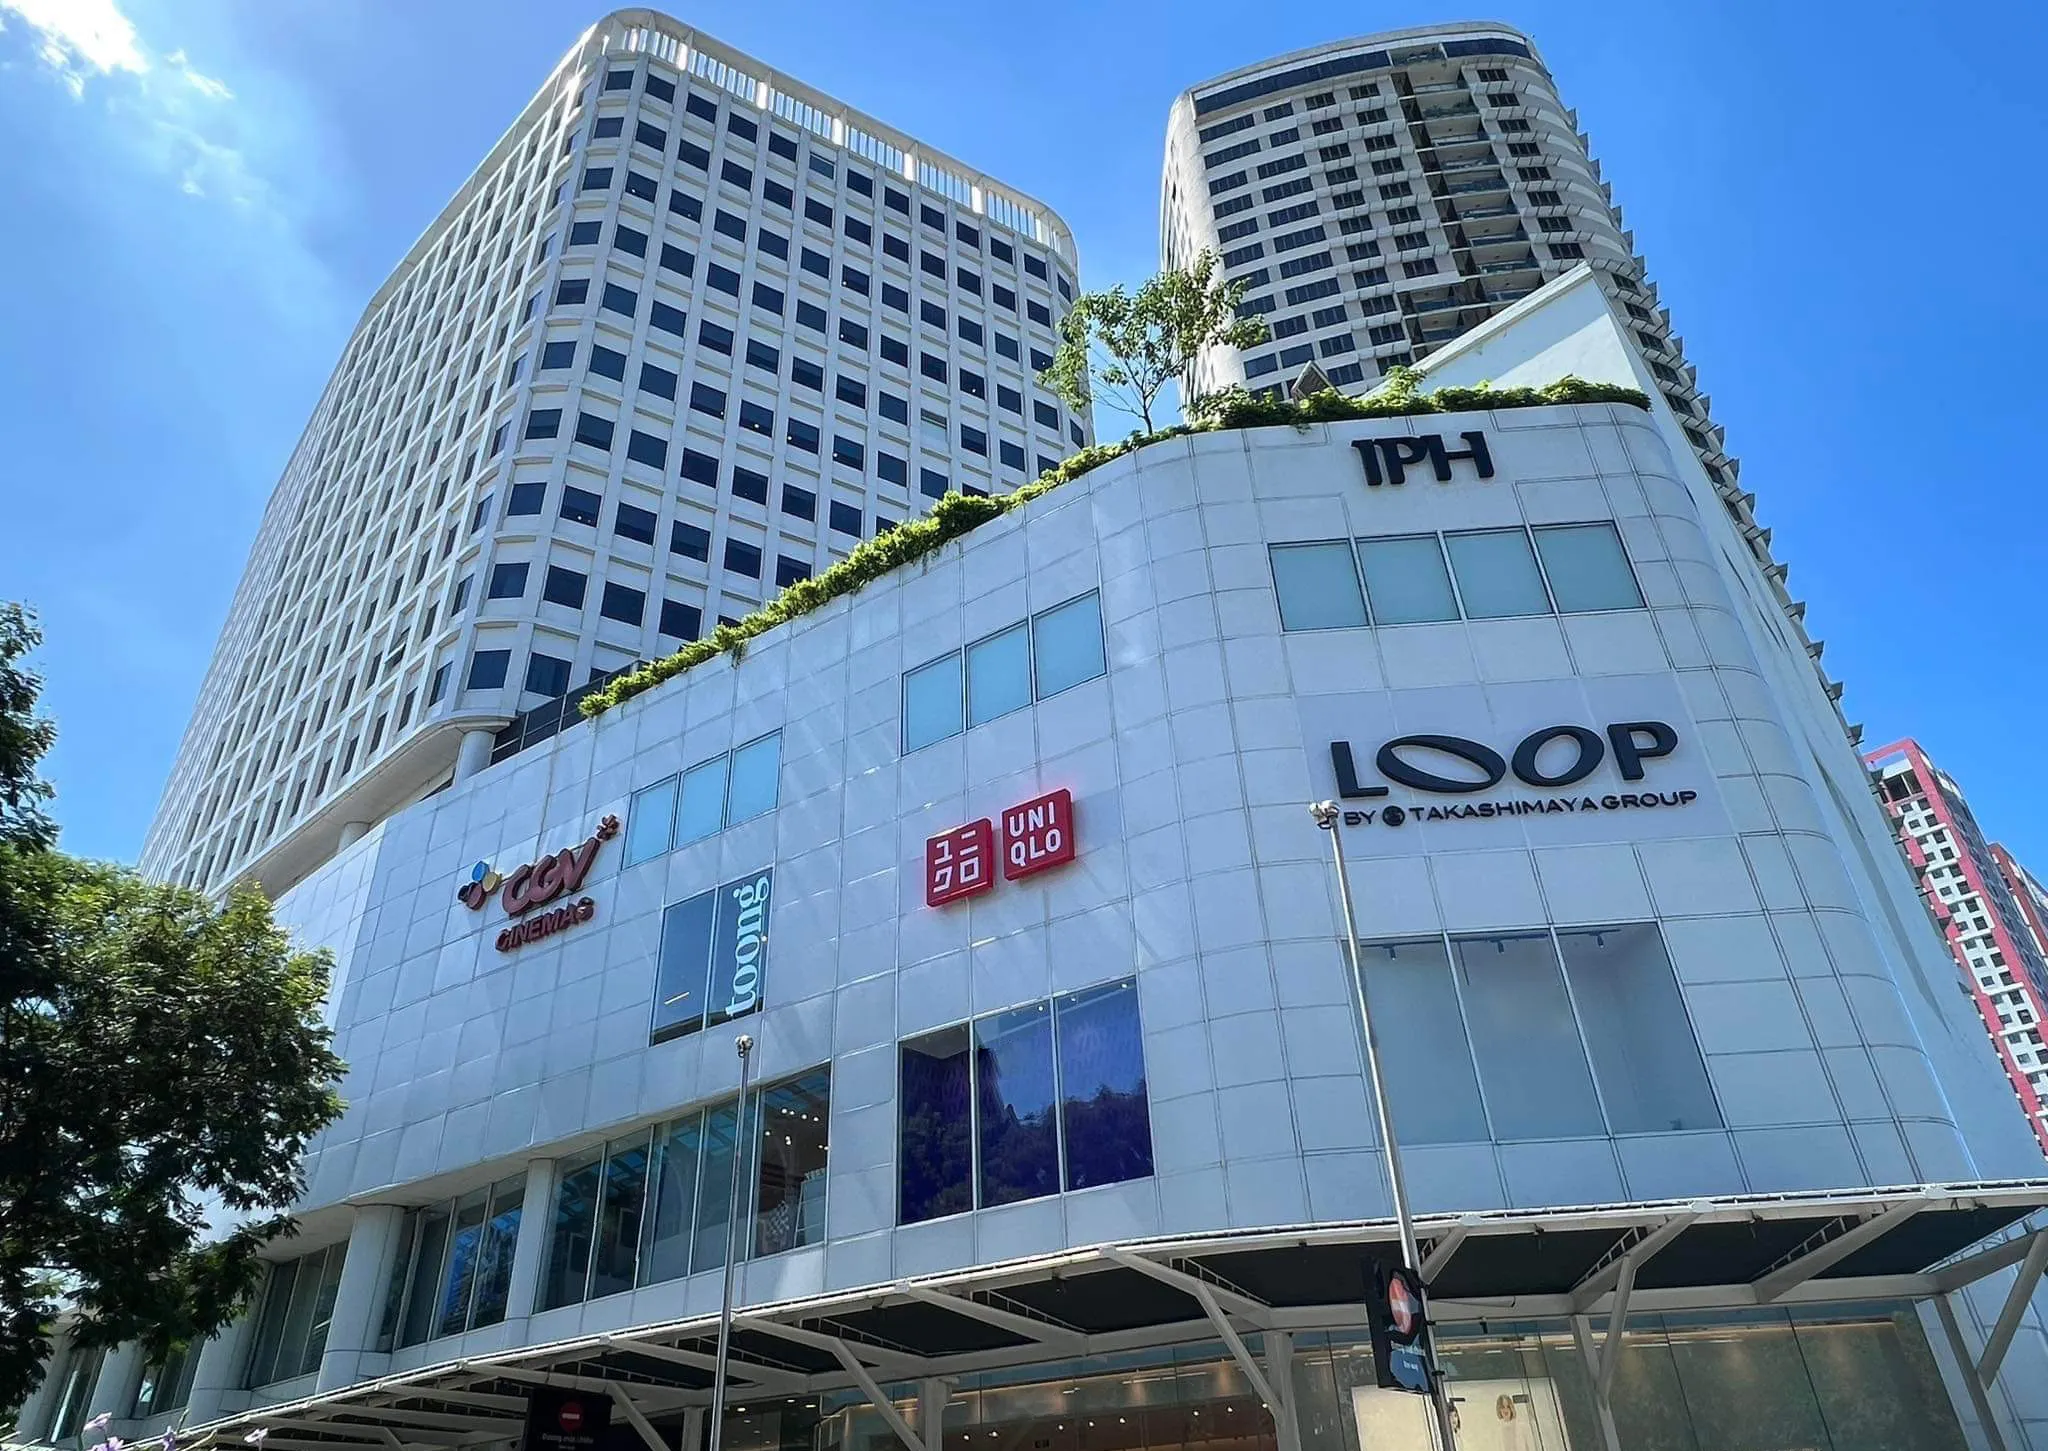 UNIQLO công bố khai trương cửa hàng UNIQLO THE LOOP IPH Tại Hà Nội vào ngày 20 tháng 07